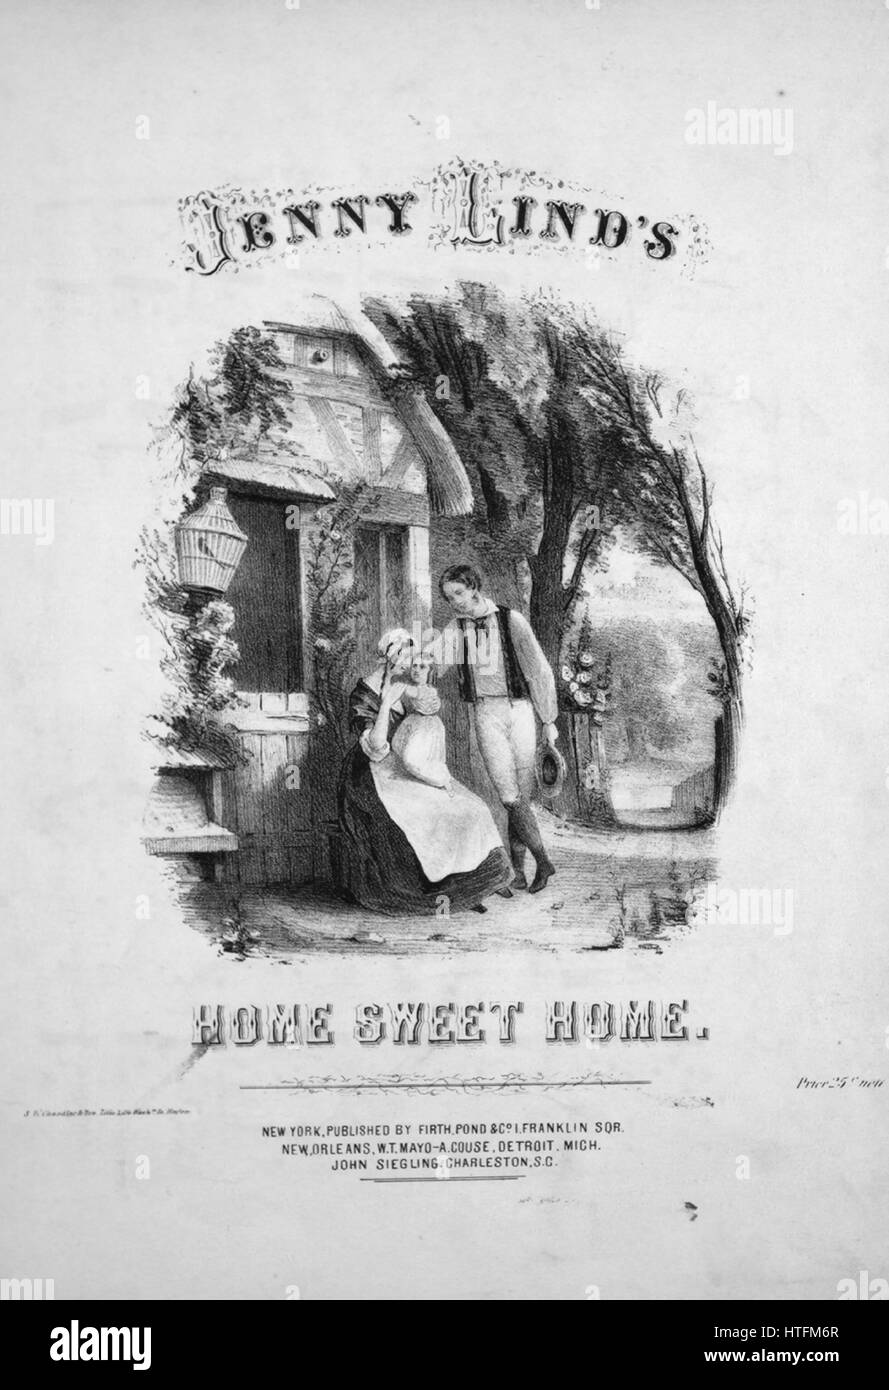 Sheet Music image de couverture de la chanson 'Jenny Lind's Home Sweet Home", avec les notes de l'auteur original à lire 'organisé par Samuel Owen', United States, 1854. L'éditeur est répertorié comme 'Firth, étang et Co., 1 Franklin Sqr.', la forme de composition trophique', 'est l'instrumentation est 'piano et voix", la première ligne se lit ''Mid plaisirs et palais bien que nous puissions errer', et l'illustration artiste est répertorié comme 'S.W. Chandler et Fr. Lith. 204 Washn. St Boston'. Banque D'Images